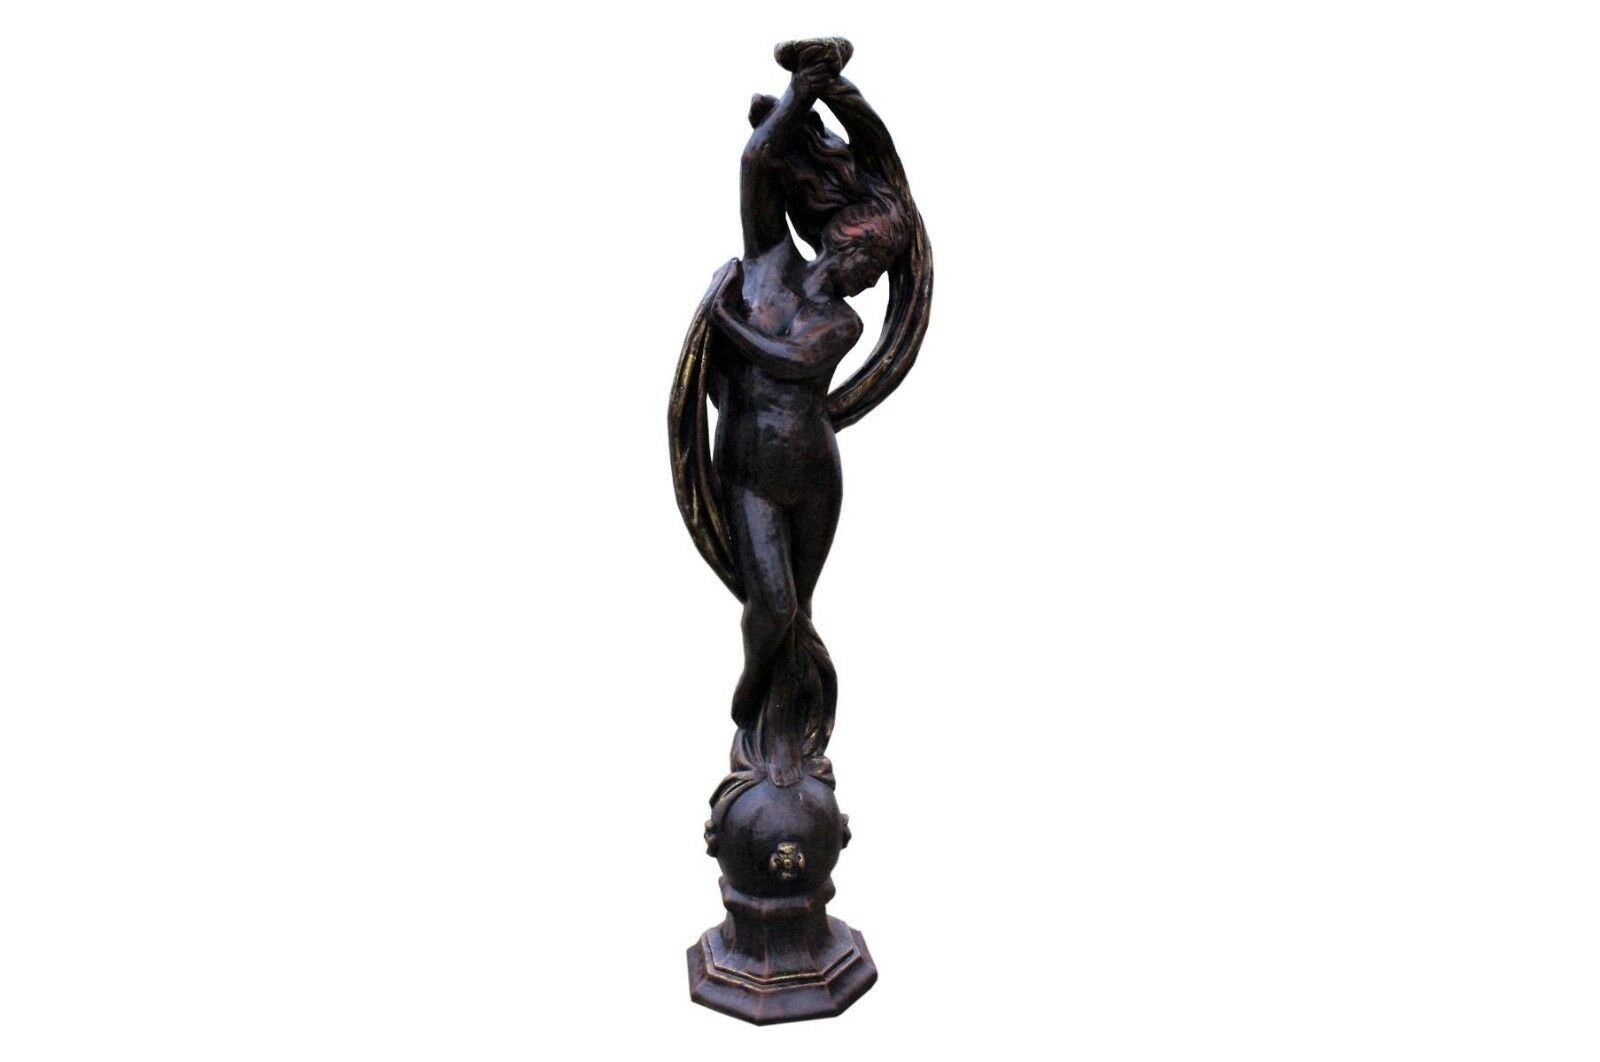 Antikes Wohndesign Gartenfigur Griechische Göttin Nackte Frauenfigur Steinfigur Gartenfigur Teichfigu